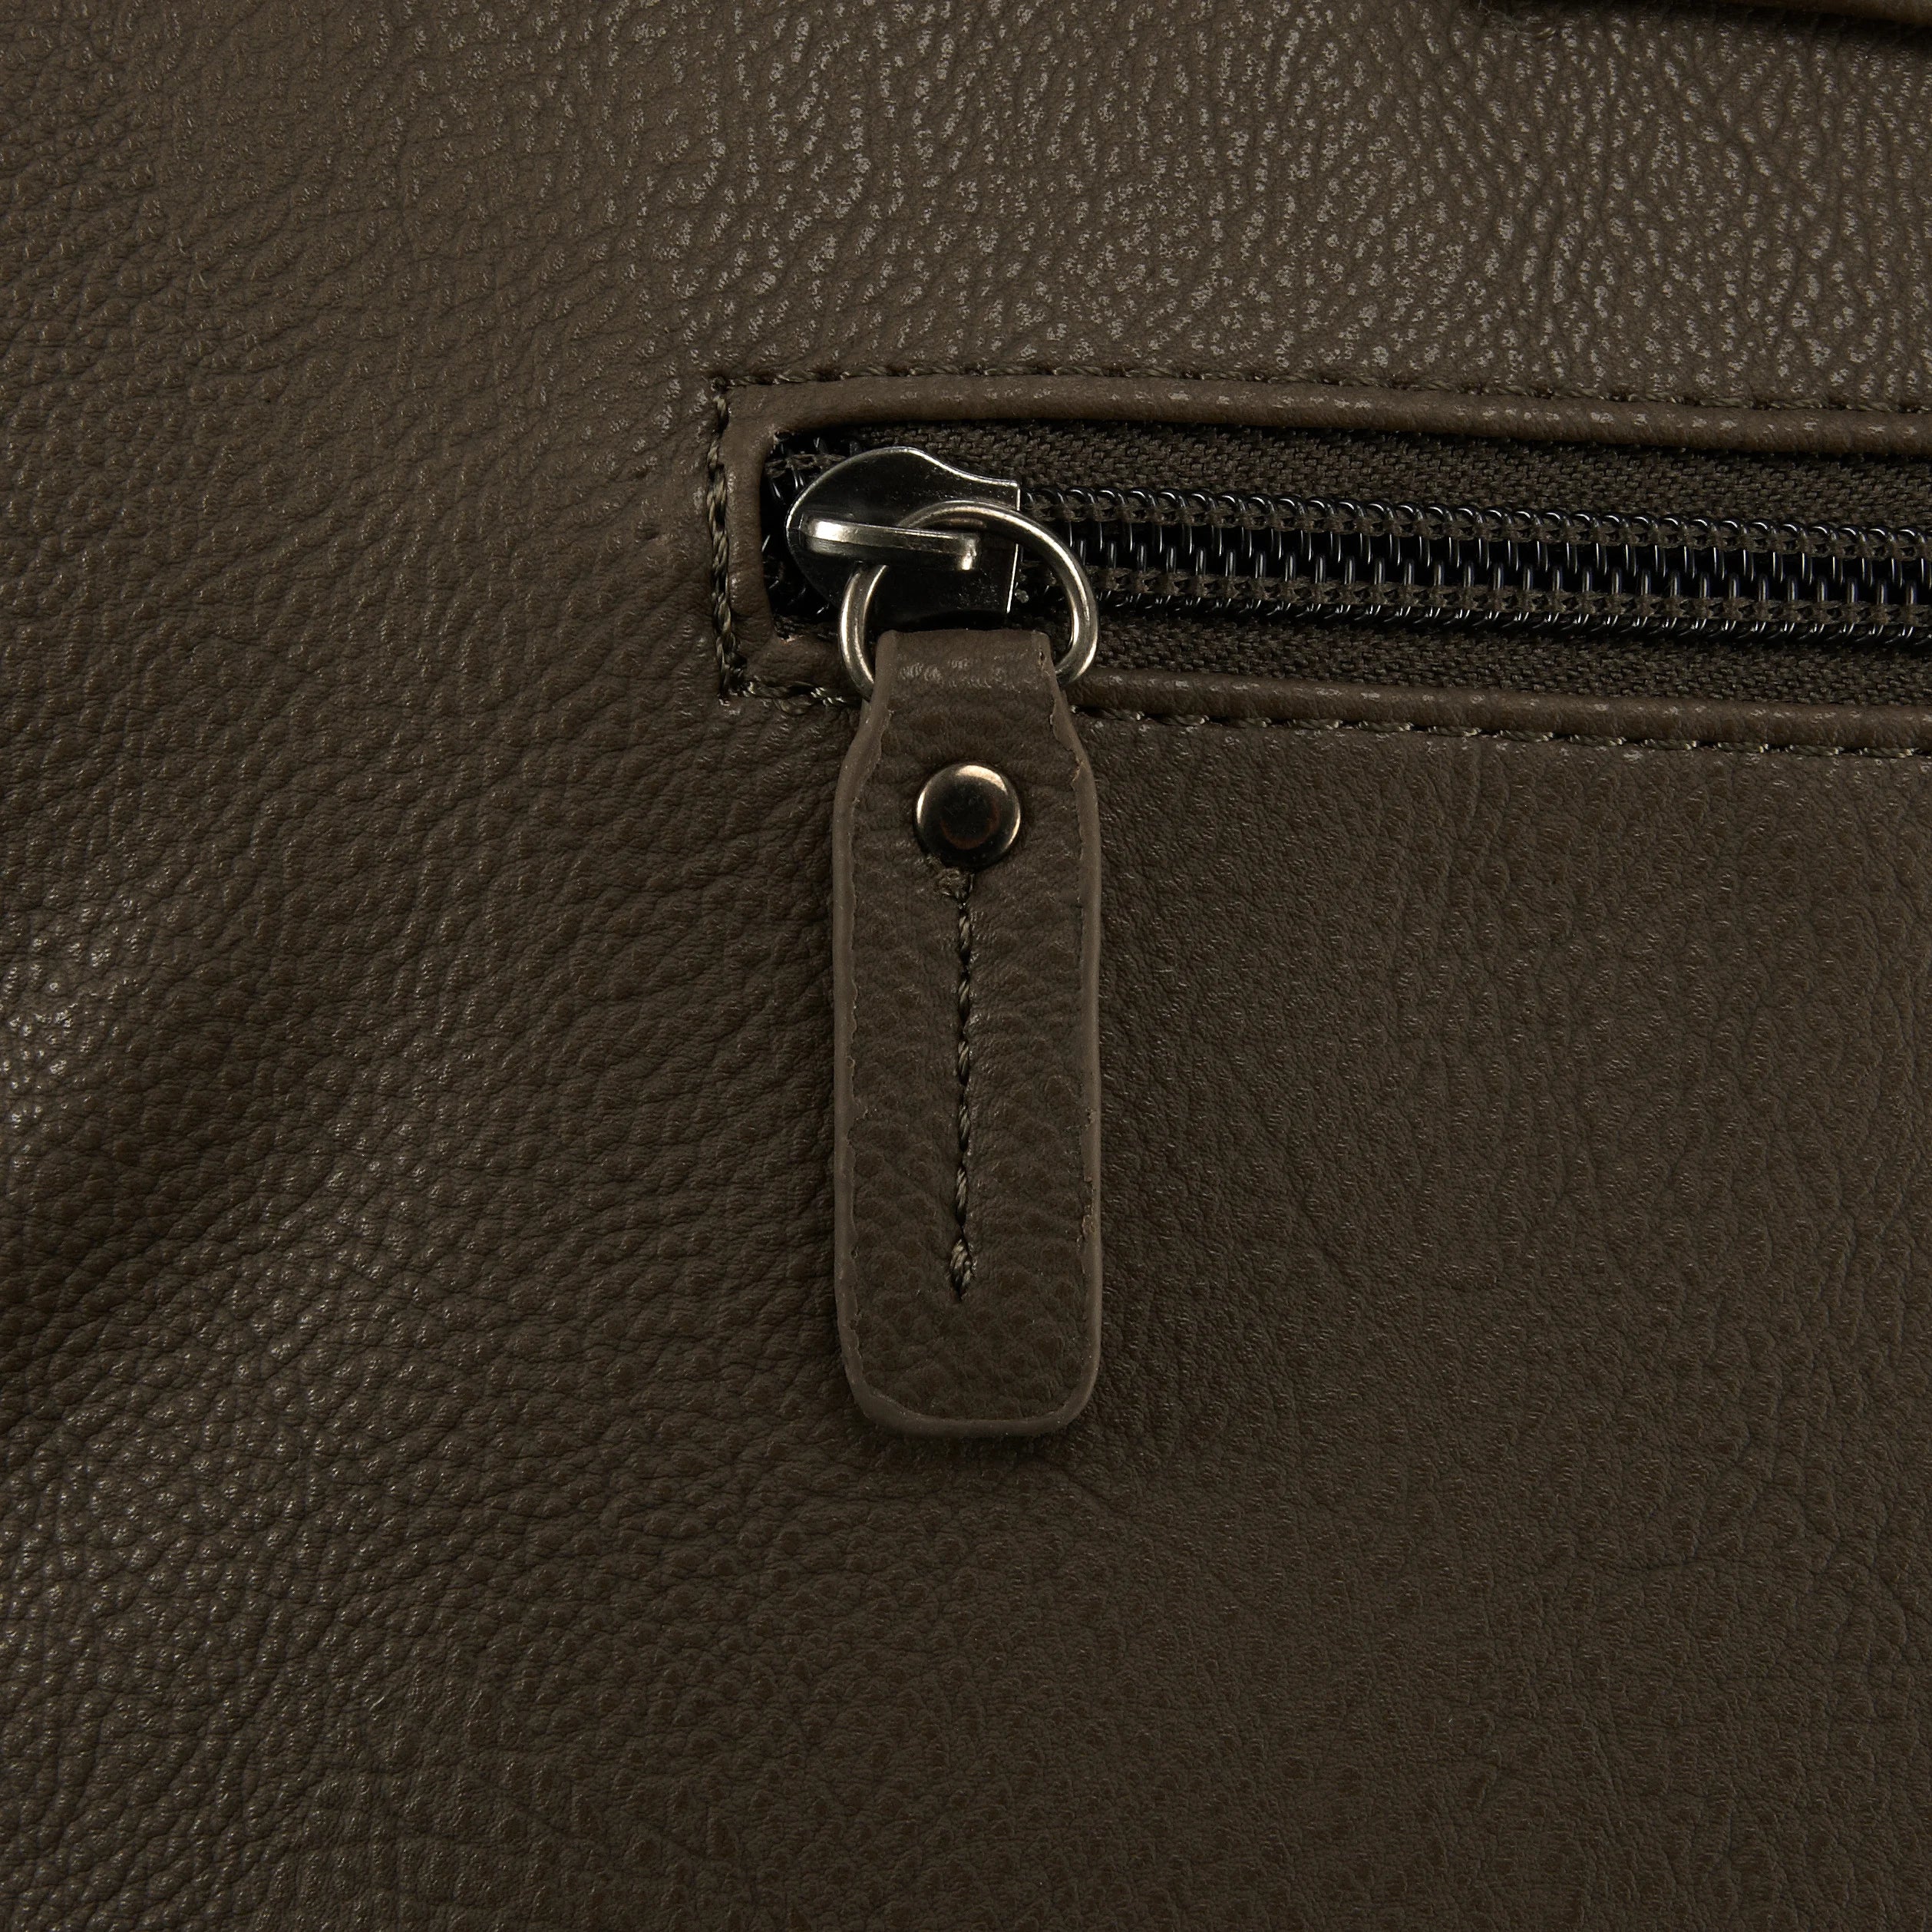 Gabol Origin briefcase with laptop compartment 41 cm - cinnamon orange